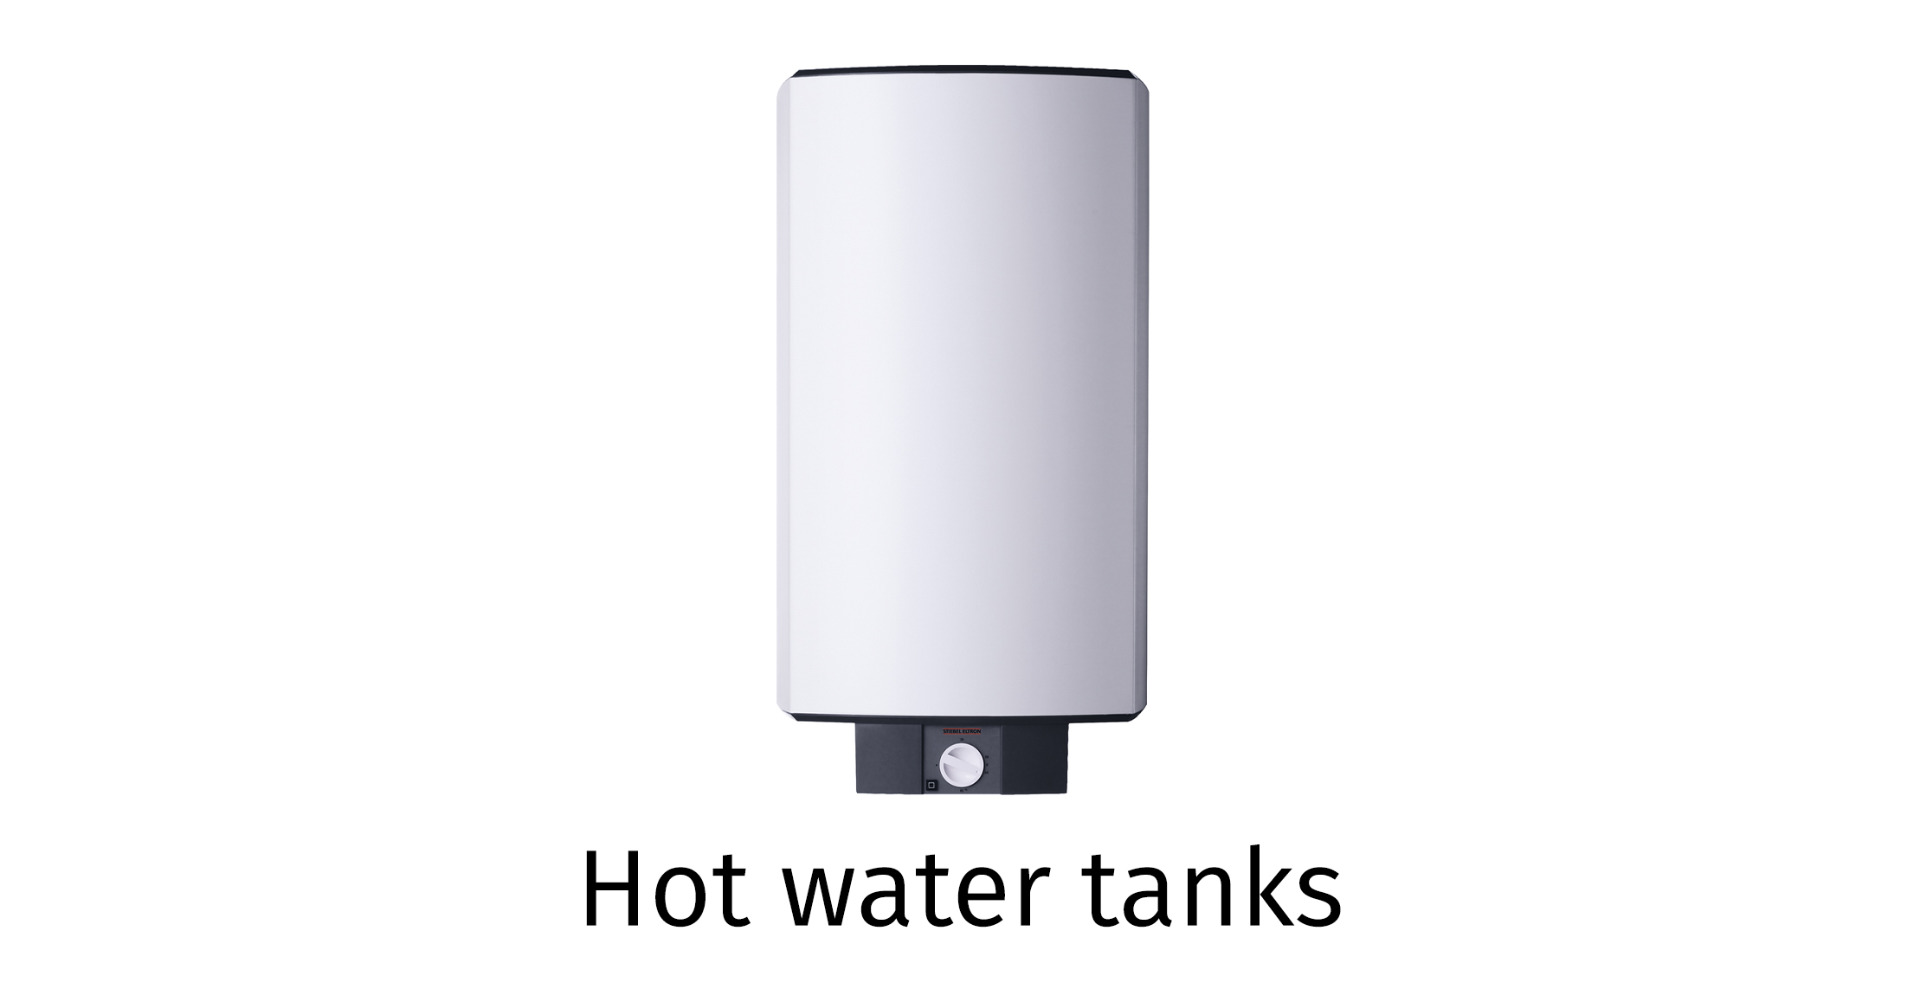 Hot water tanks